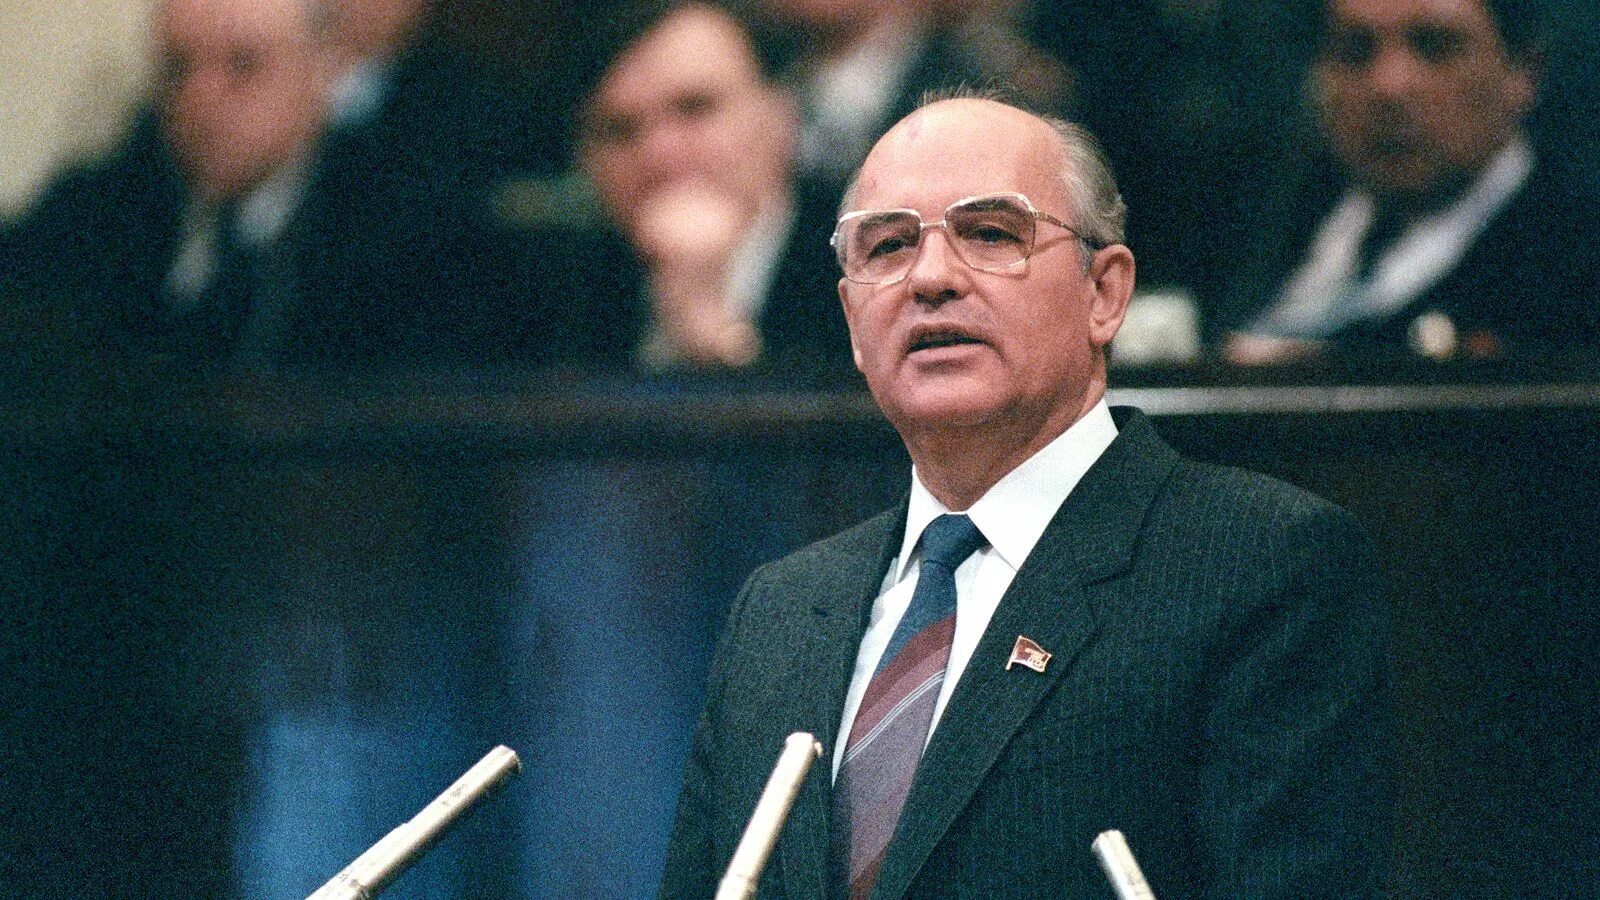 Состояние здоровья горбачева. Горбачев 1985. ЦК КПСС Горбачев.